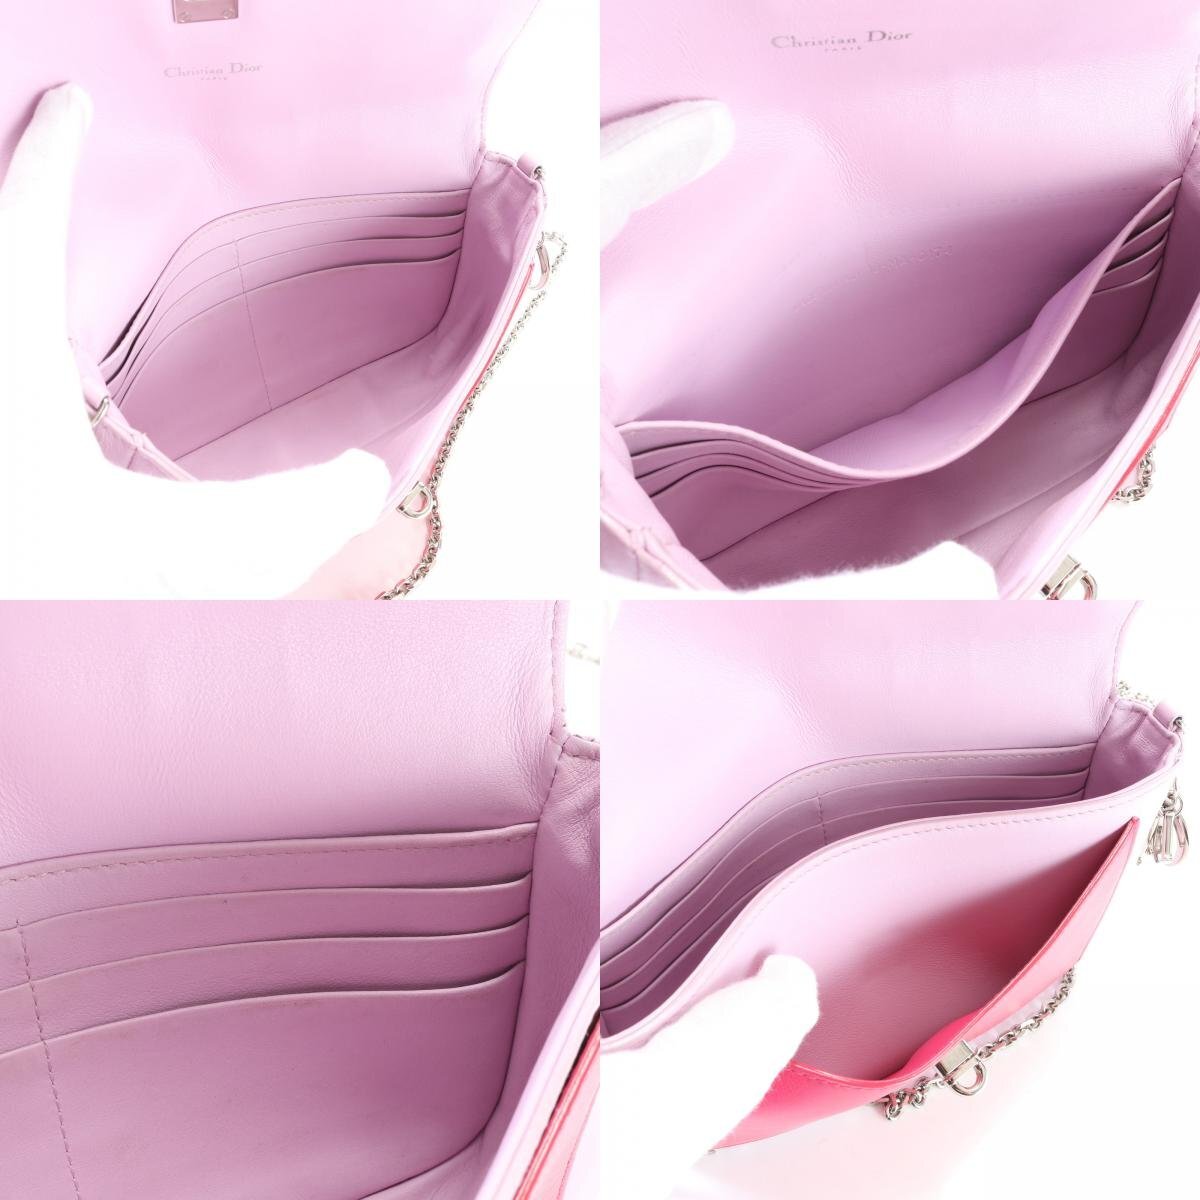 1 иен # превосходный товар # Christian Dior # кожа # серебряная цепь сумка на плечо # рука большая сумка популярный Pink Lady -sEJT G12-10